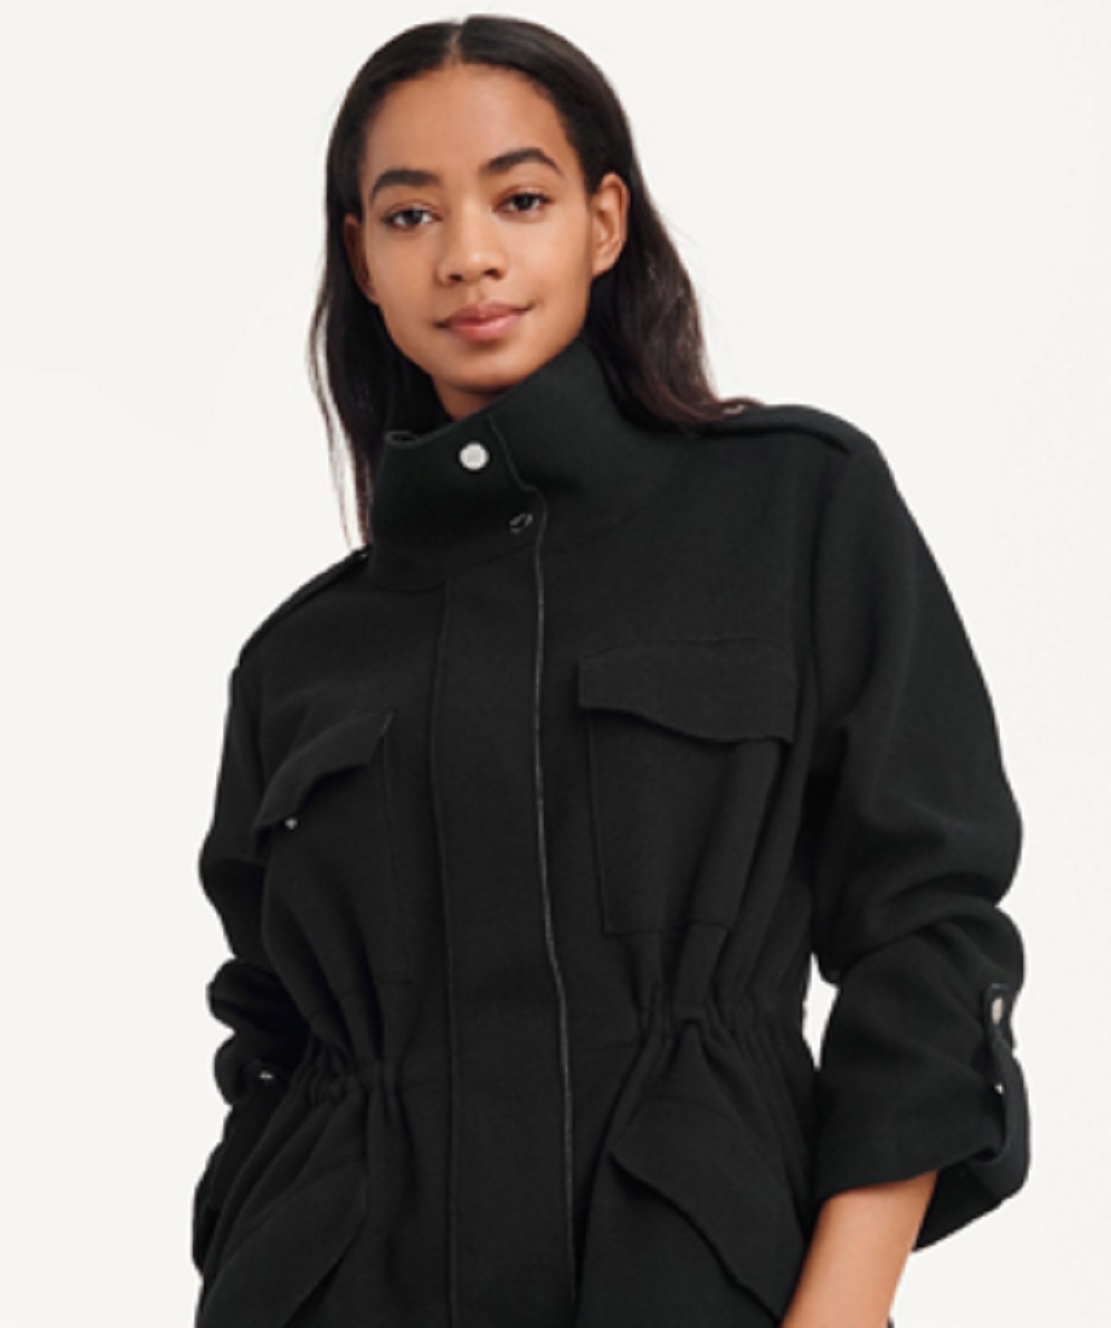 DKNY Women's Felt Cargo Jacket Black Size 0